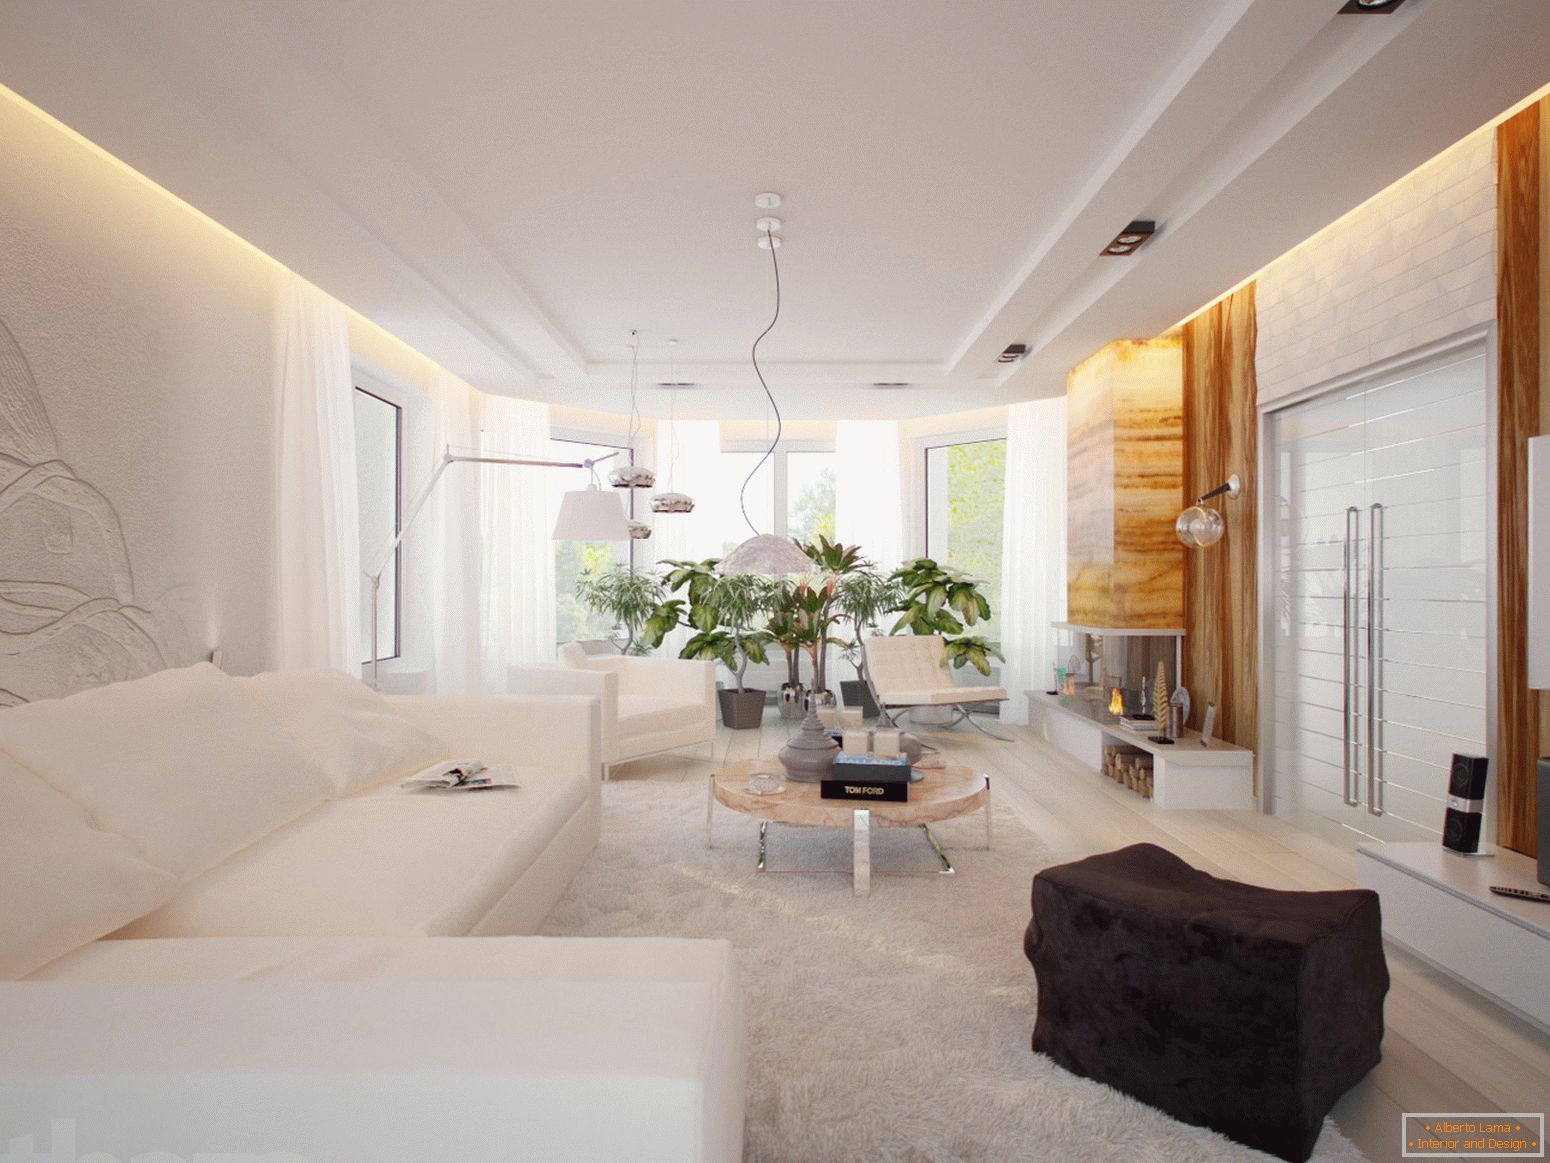 Um quarto espaçoso e luminoso no estilo minimalista é um excelente exemplo de mobiliário devidamente selecionado.